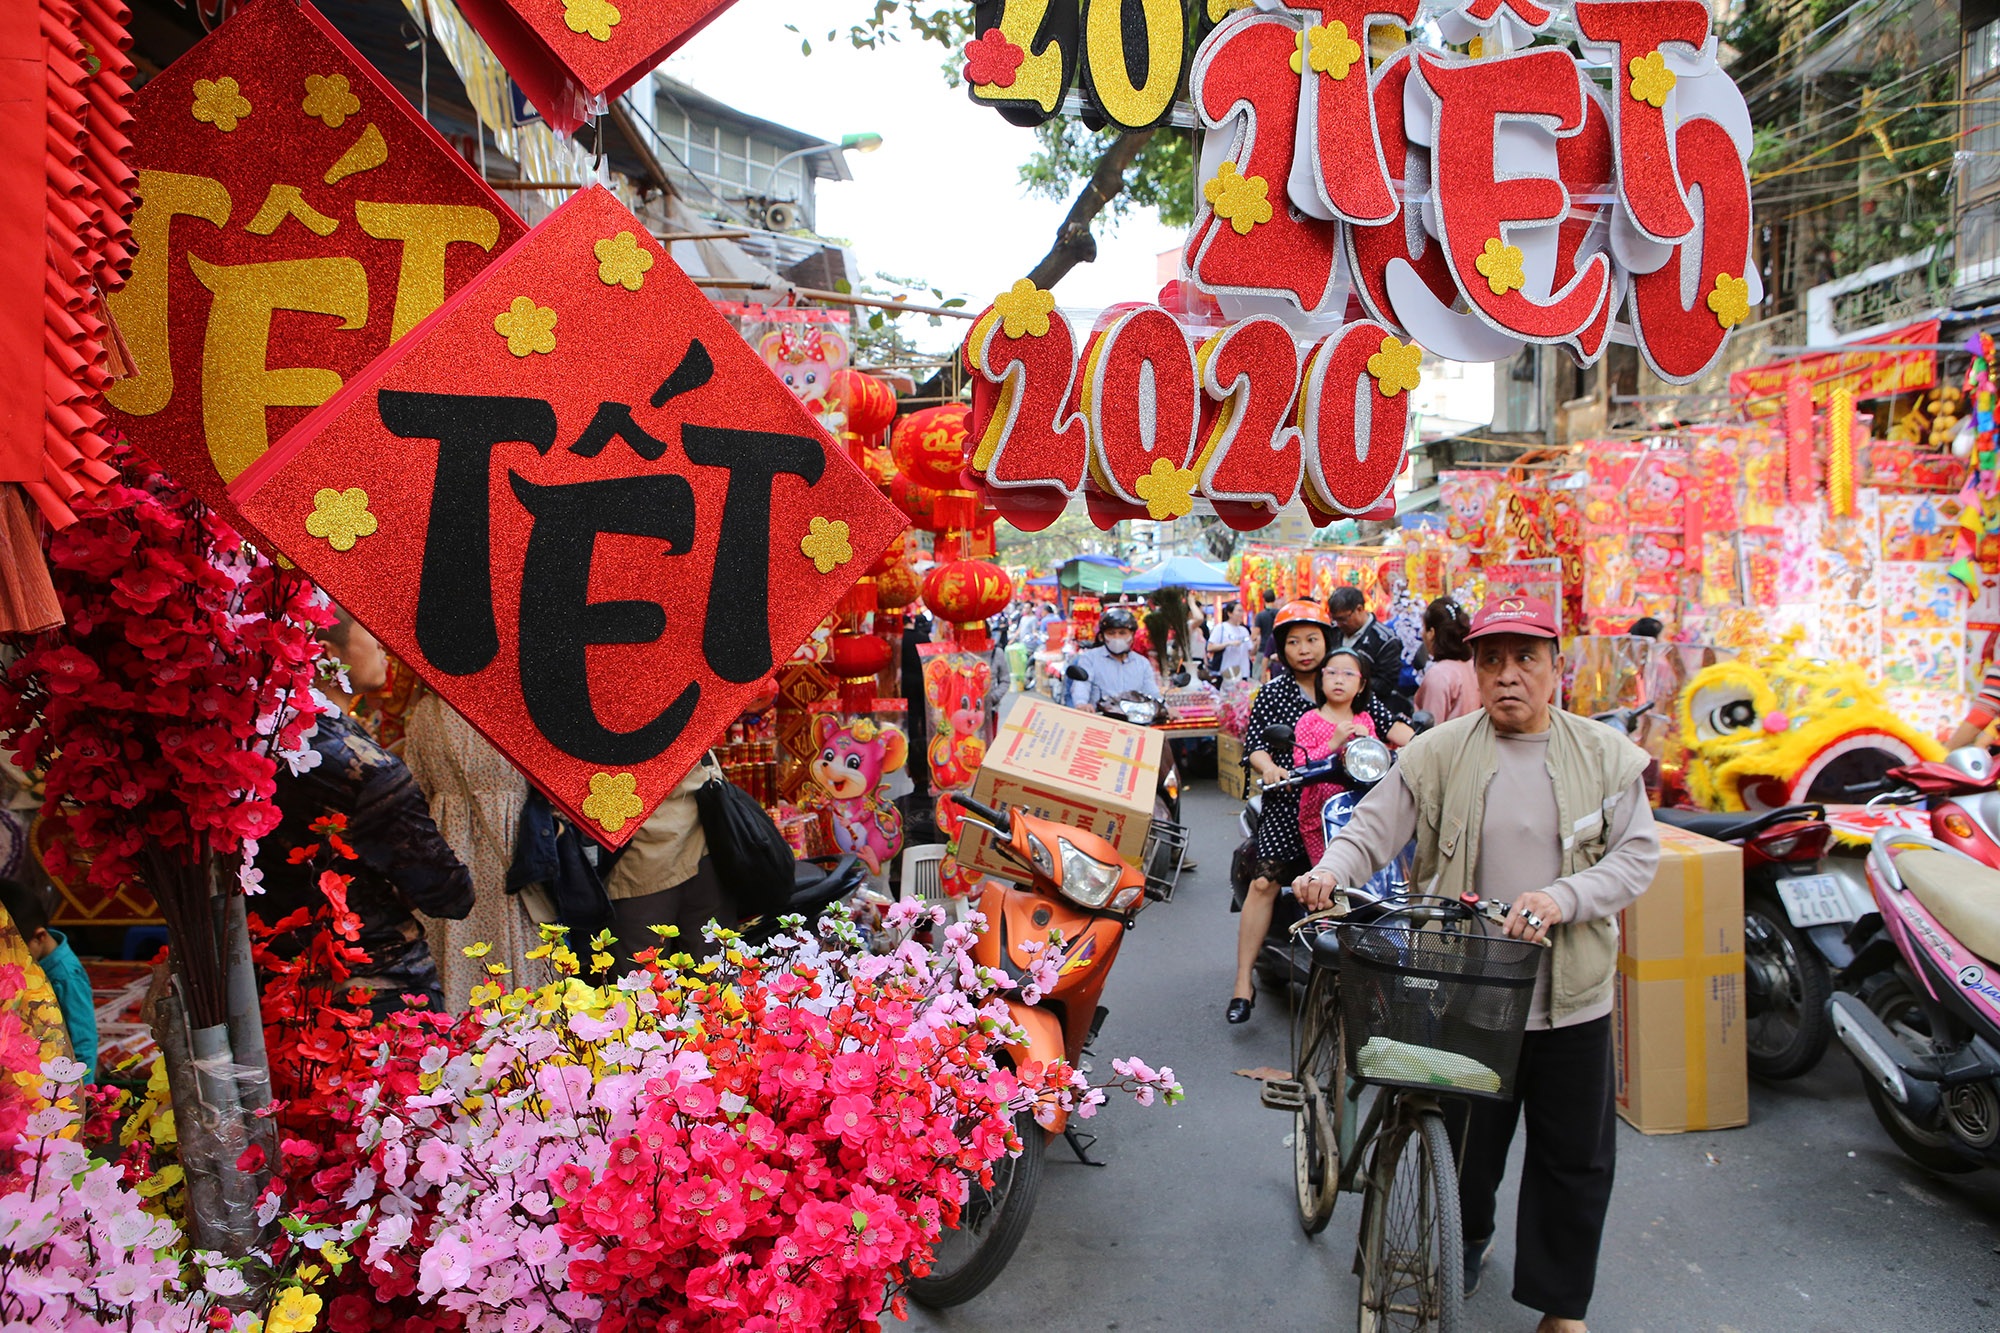 Nồng nàn vị Tết ở chợ hoa lâu đời nhất Hà Nội | Báo Dân trí